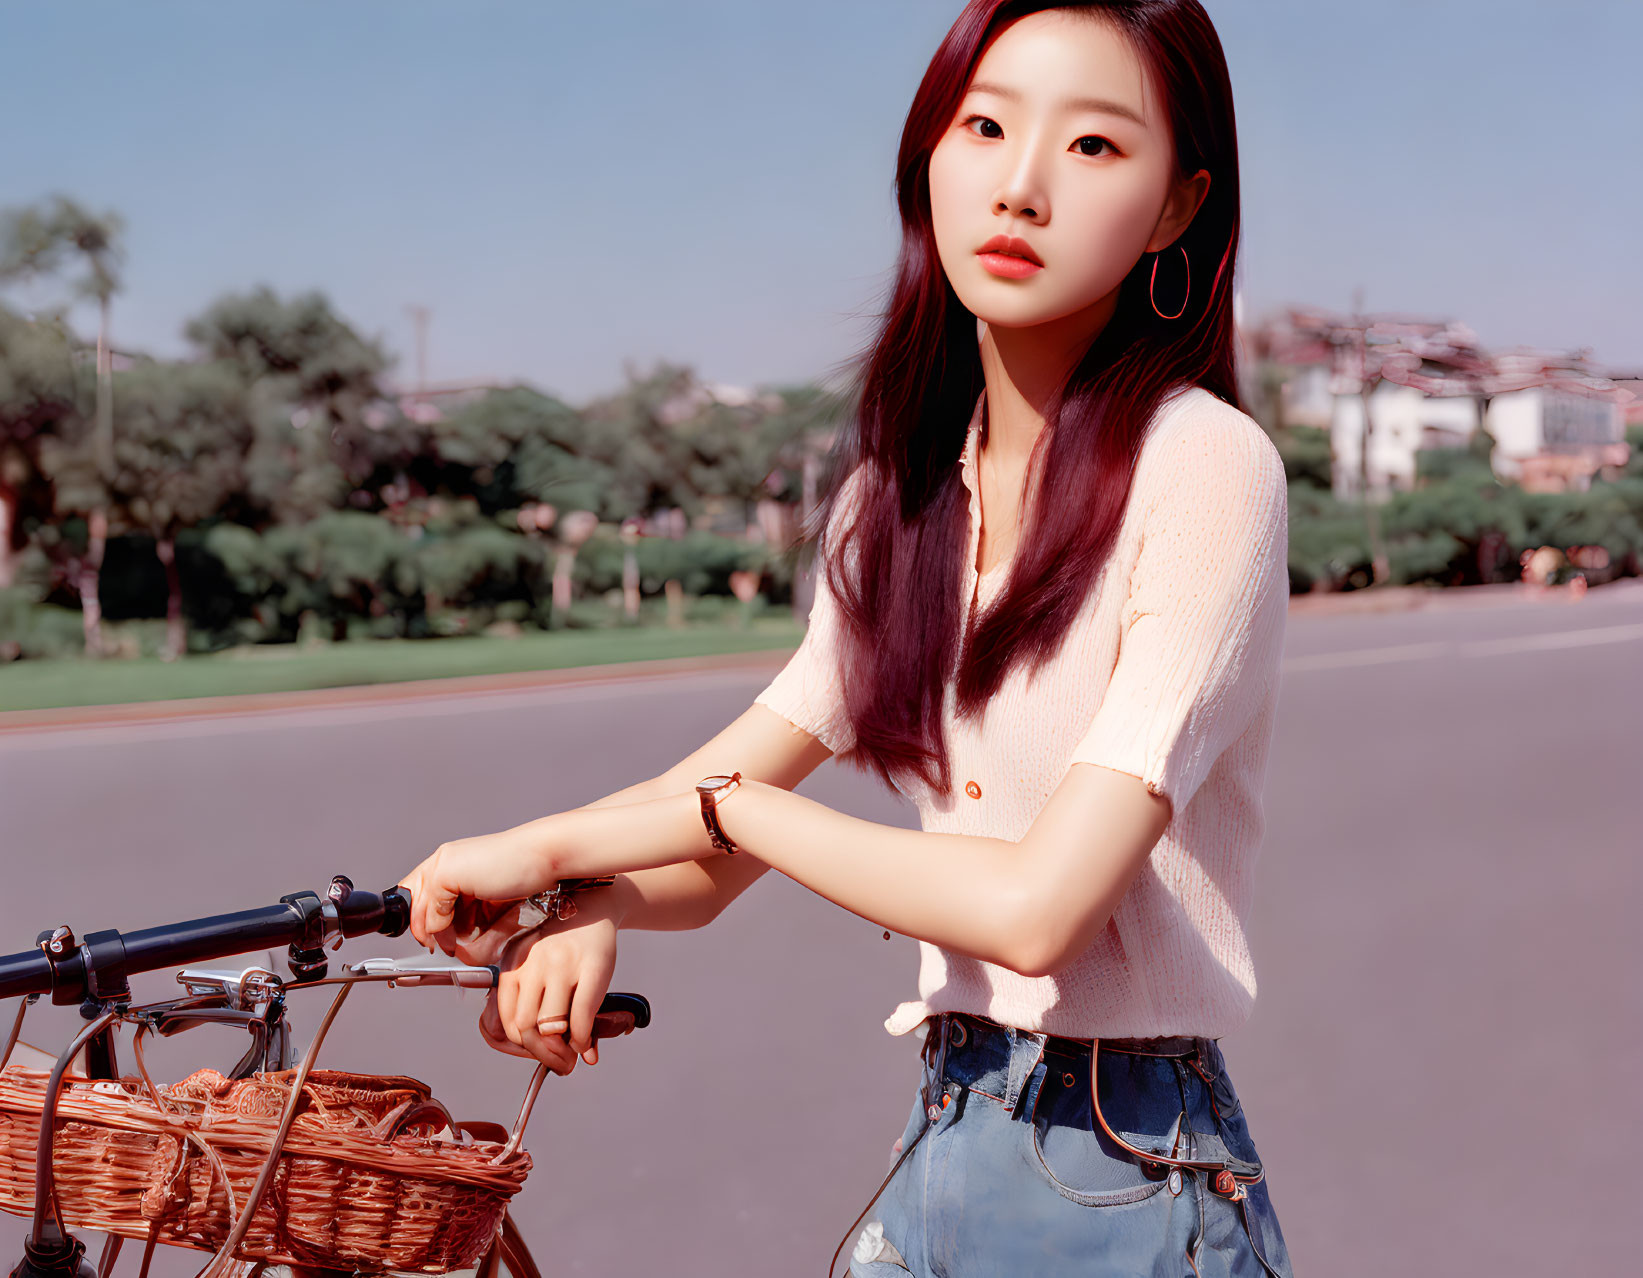 Beautiful Korean riding a bicycle